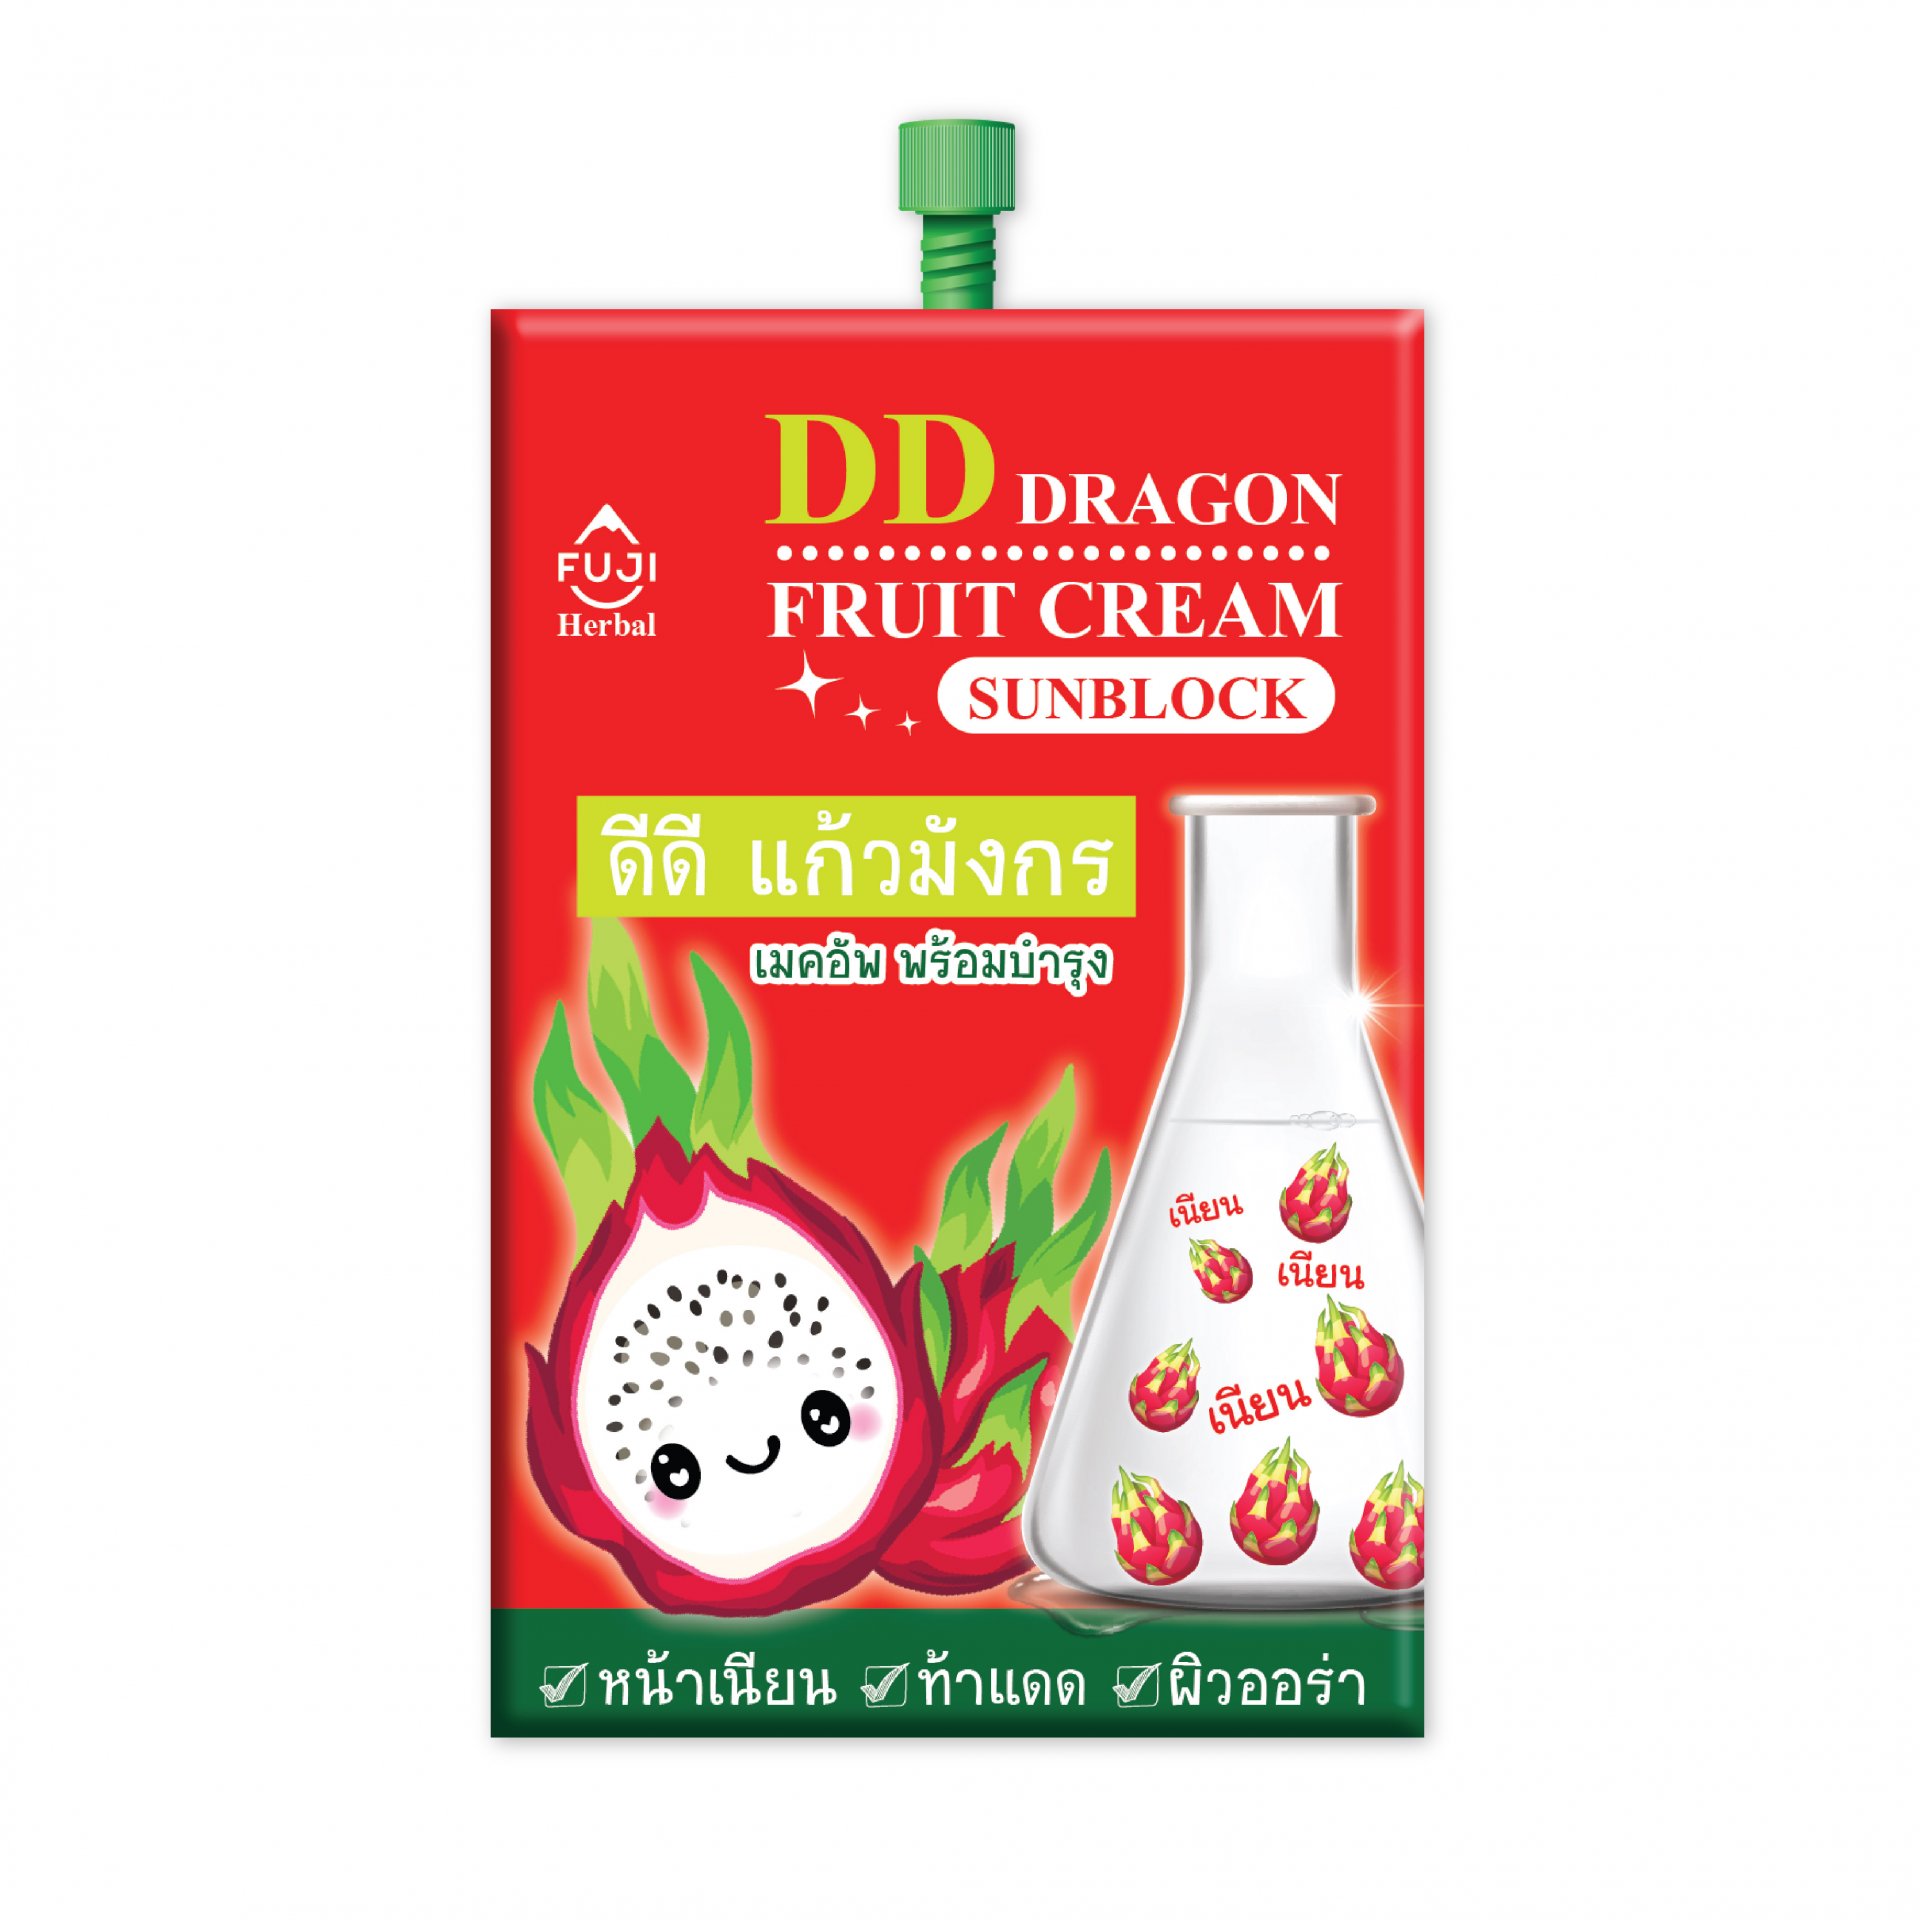 FUJI DD DRAGON FRUIT CREAM